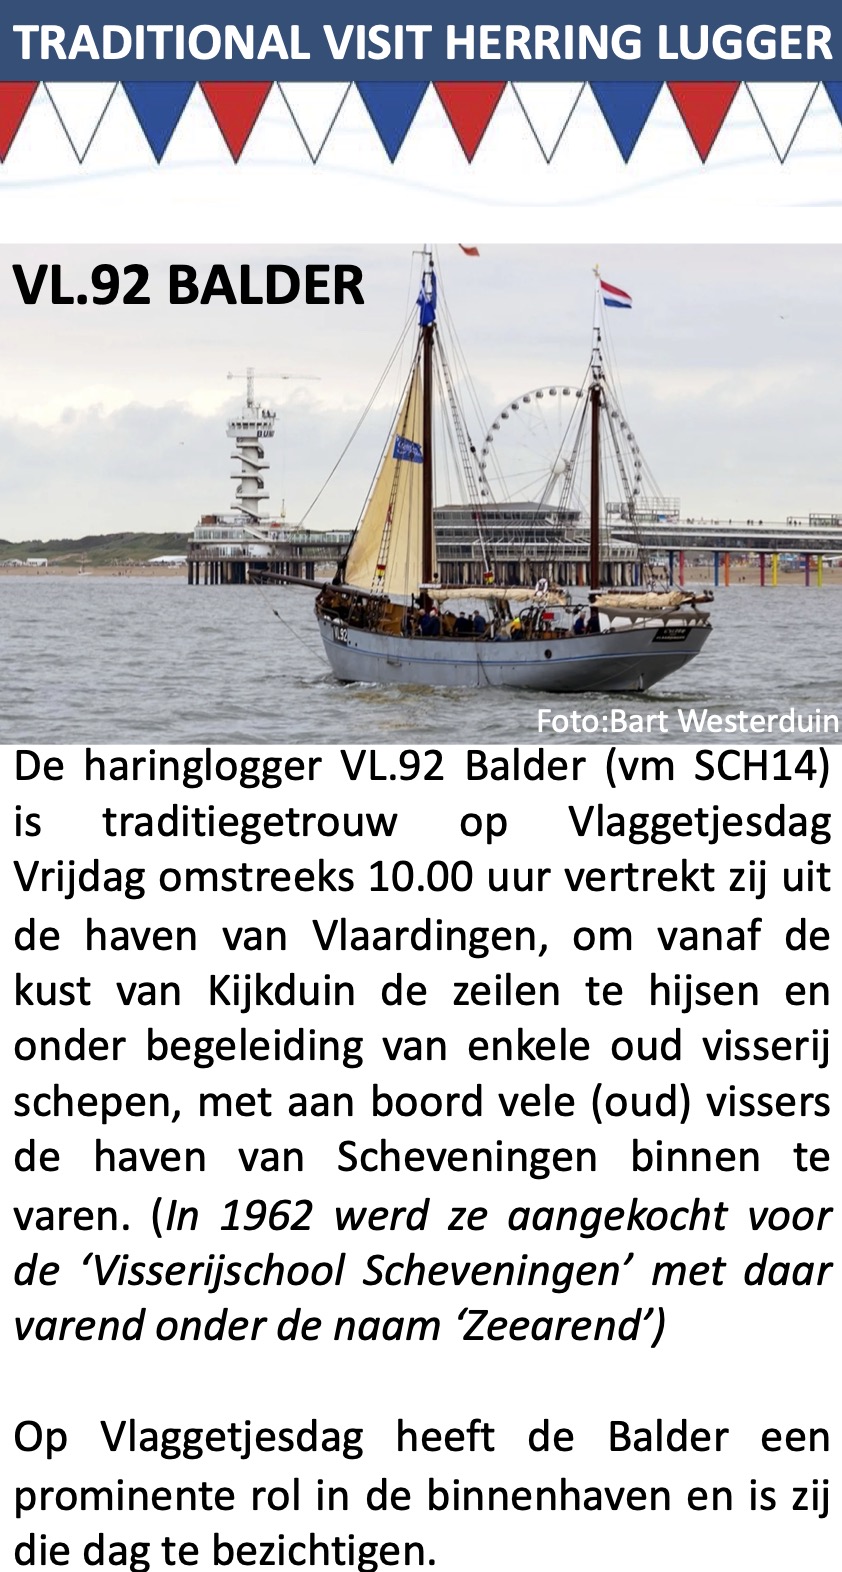 TALLSHIPS afgemeerd in de haven van Scheveningen